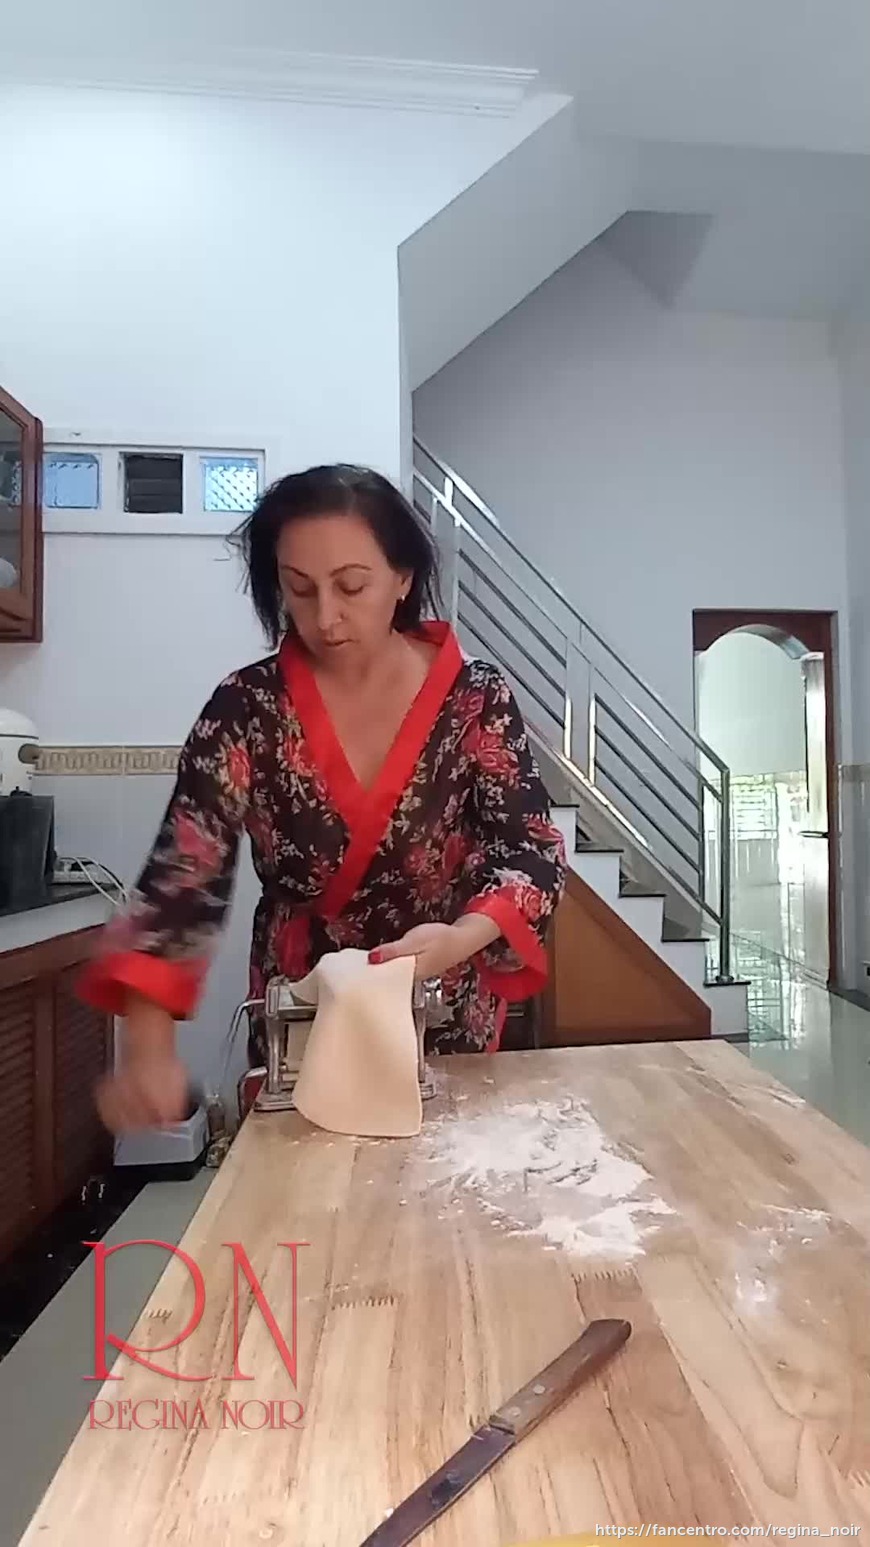 Making ravioli